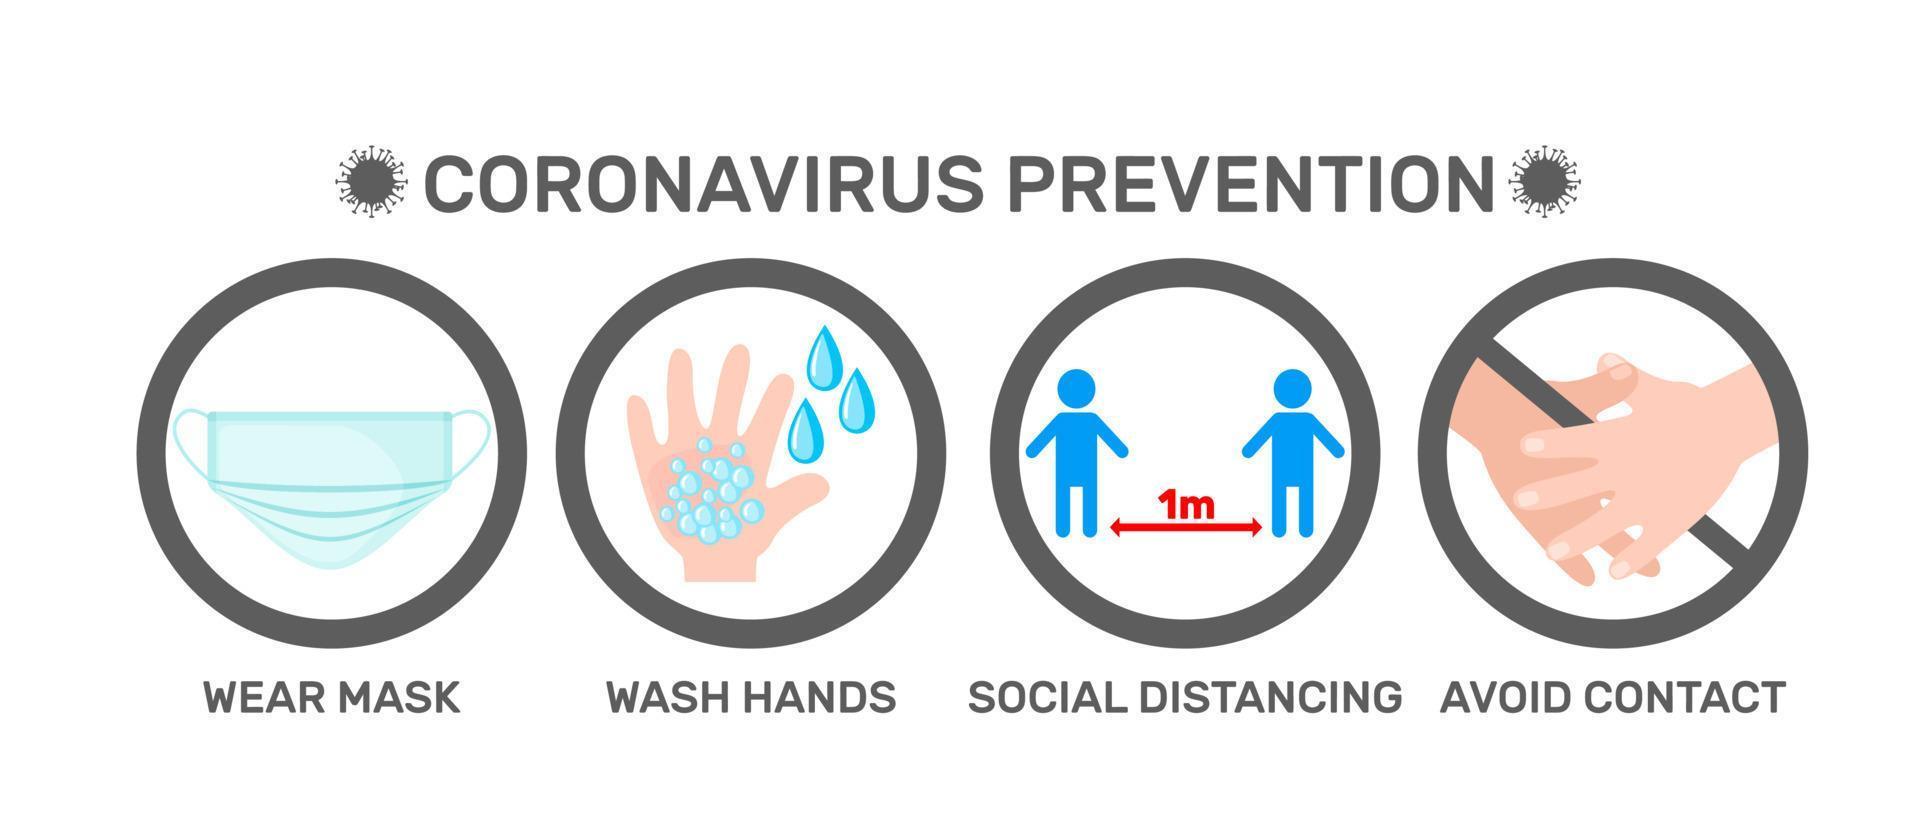 ícones de infográficos de prevenção de coronavírus em estilo simples, isolado no fundo branco. equipamento de proteção epidêmica covid-19. conceito de saúde. ilustração vetorial. vetor